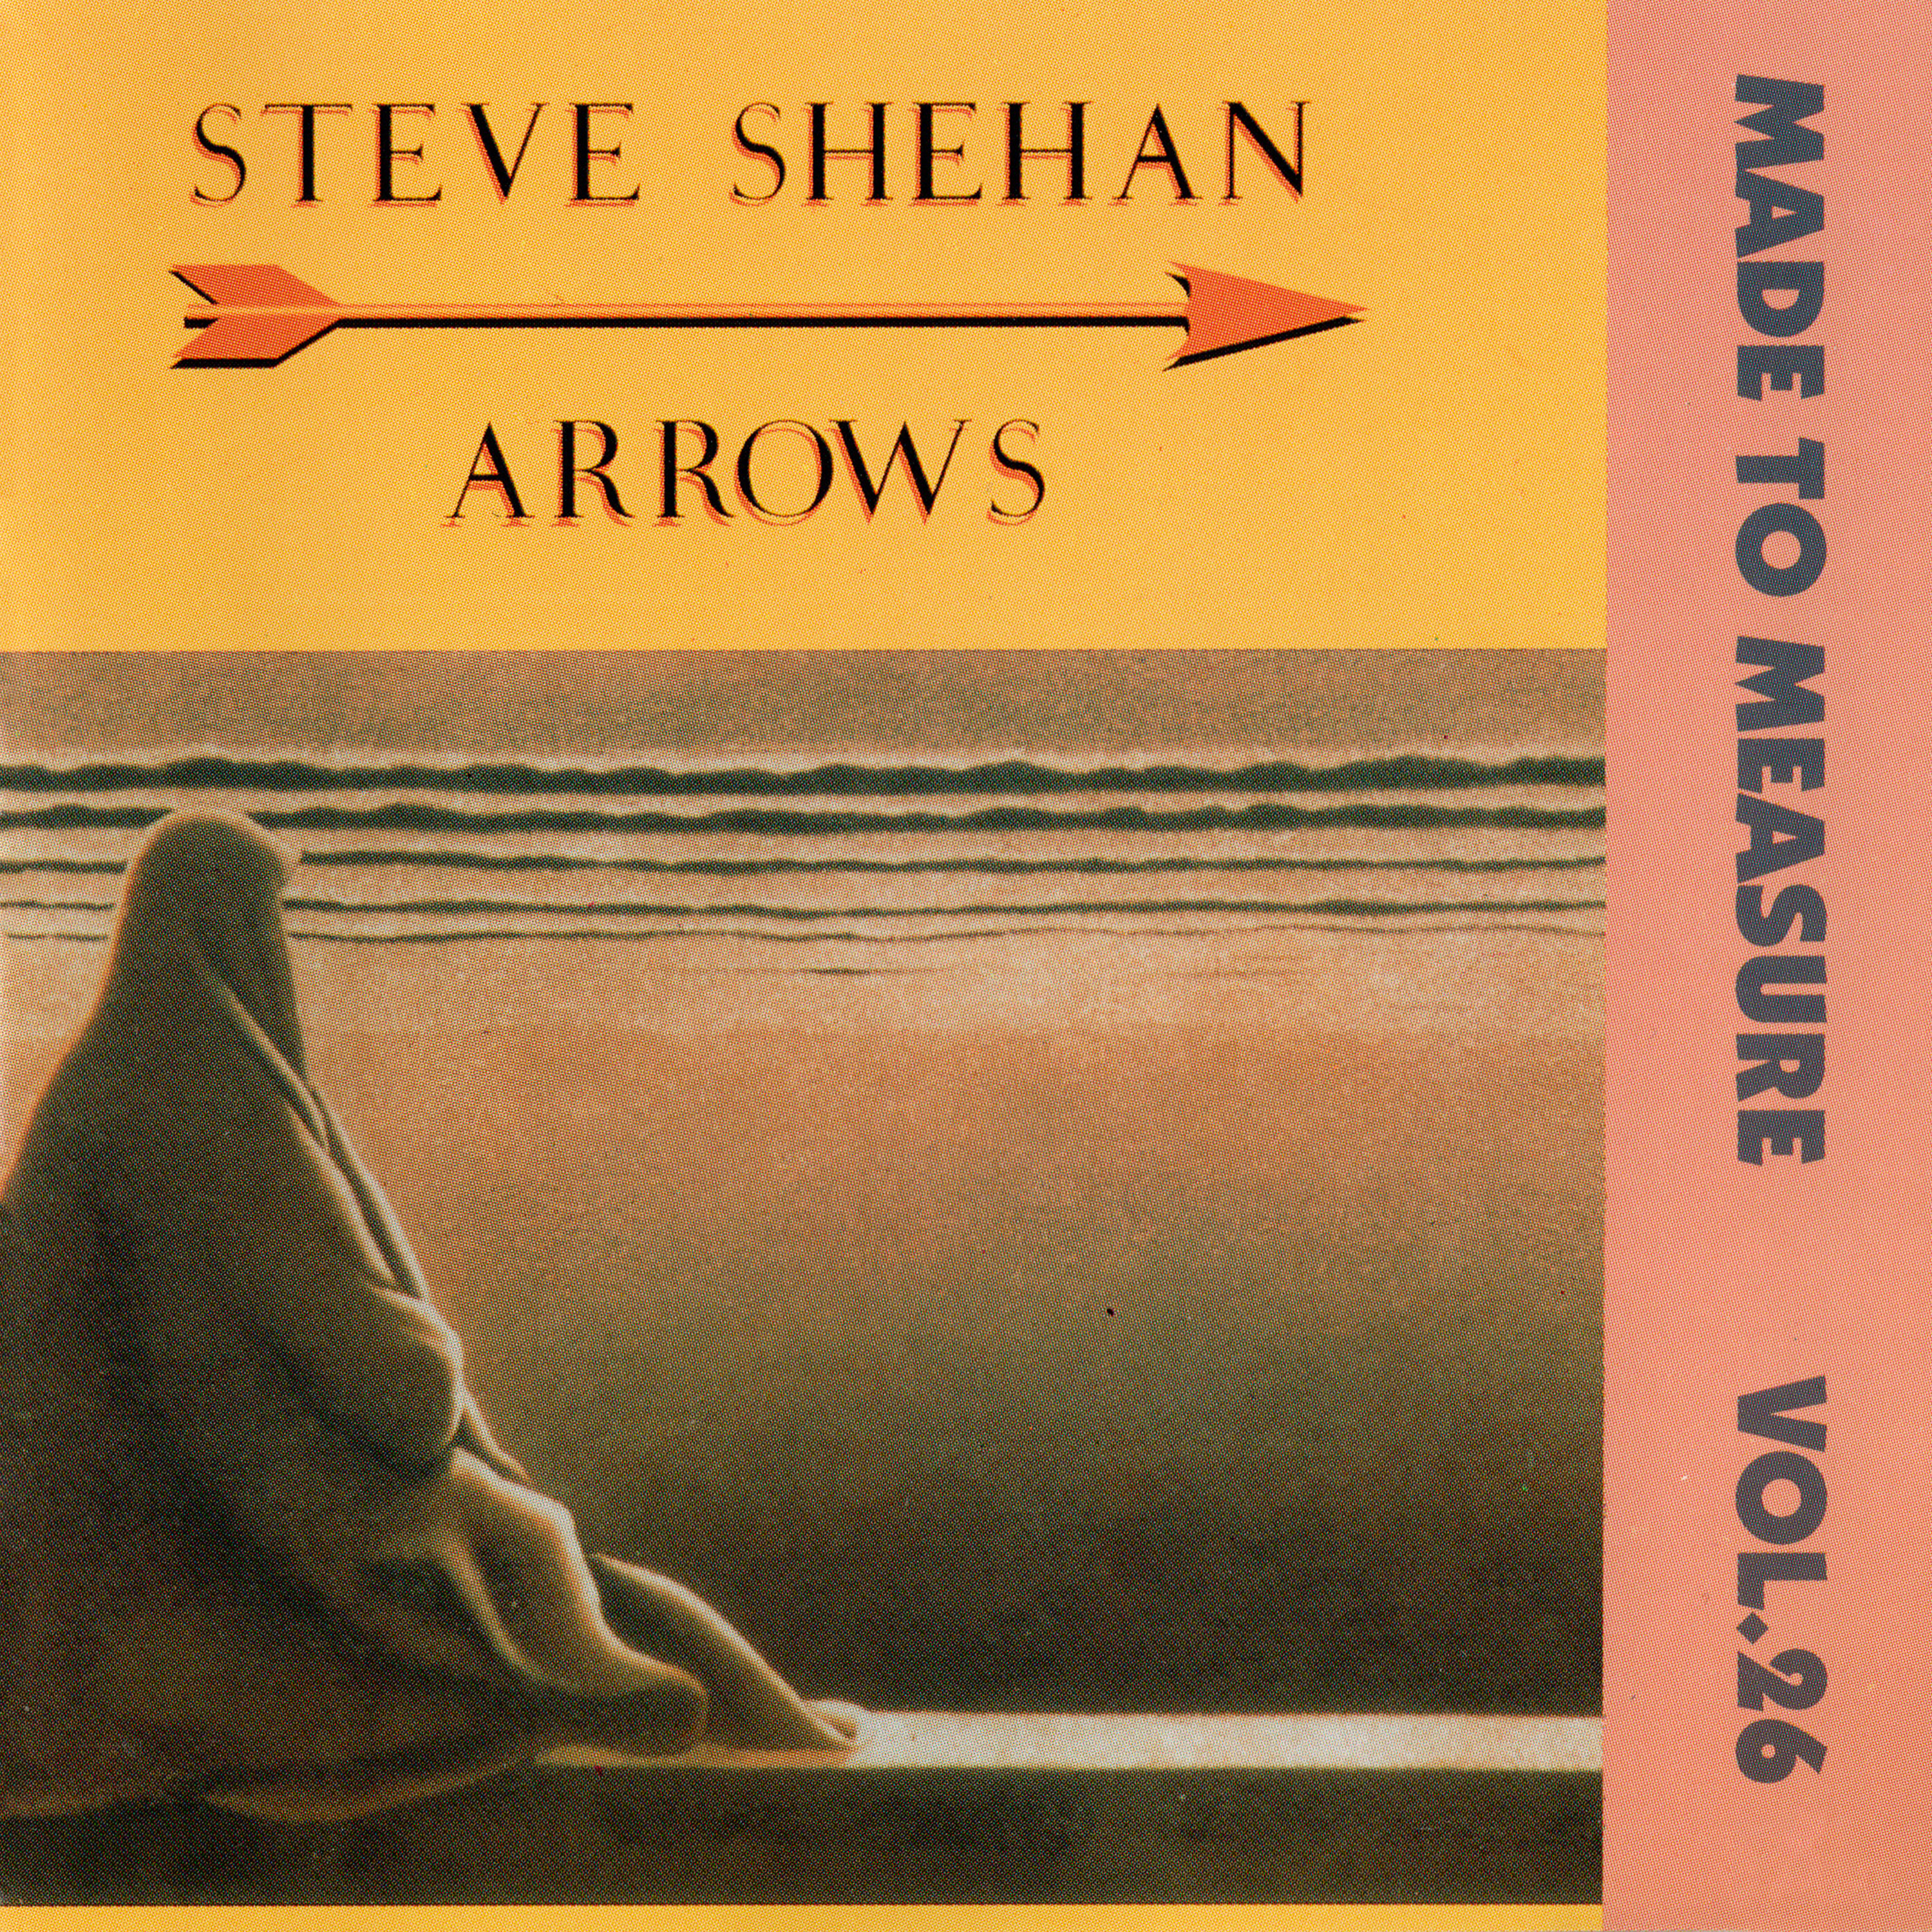 STEVE SHEHAN - Arrows (MTM Vol.26)